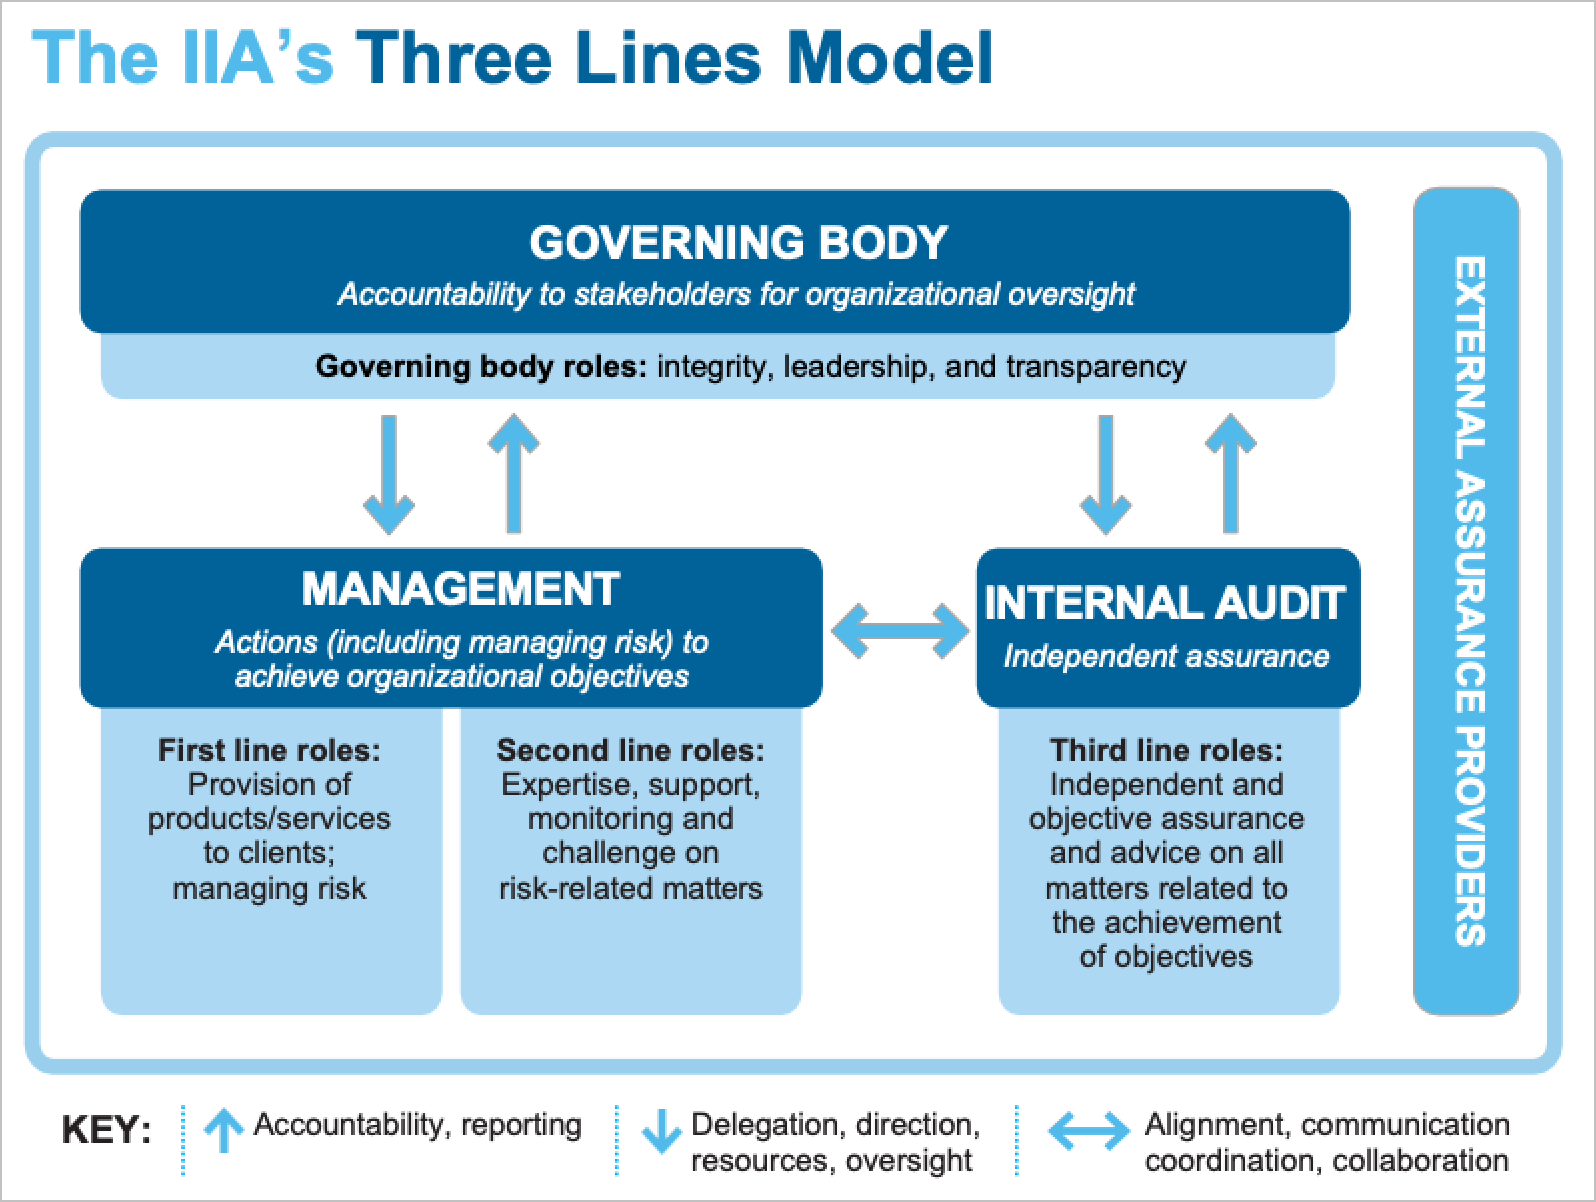 Source: El modelo de las tres líneas del IIA: Una actualización de las tres líneas de defensa, página 4.